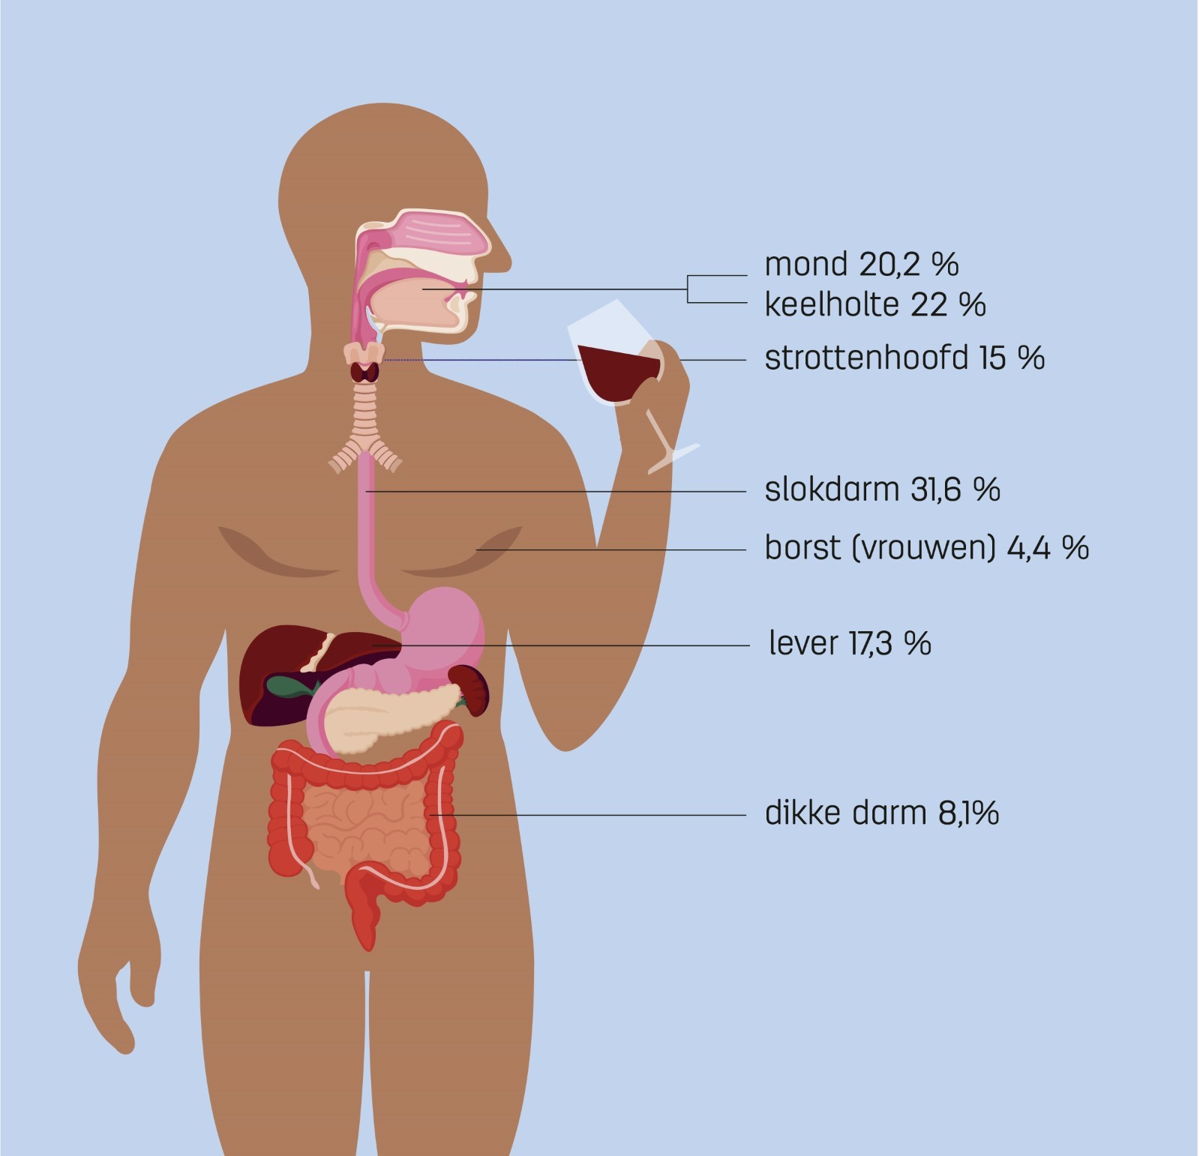 Percentage per type kanker dat veroorzaakt wordt door alcohol. 
Gebaseerd op: Rumgay H, Shield K, Charvat H, et al. Global burden of cancer in 2020 attributable to alcohol consumption: a population-based study. Lancet Oncol. 2021; 22: 1071-1080.